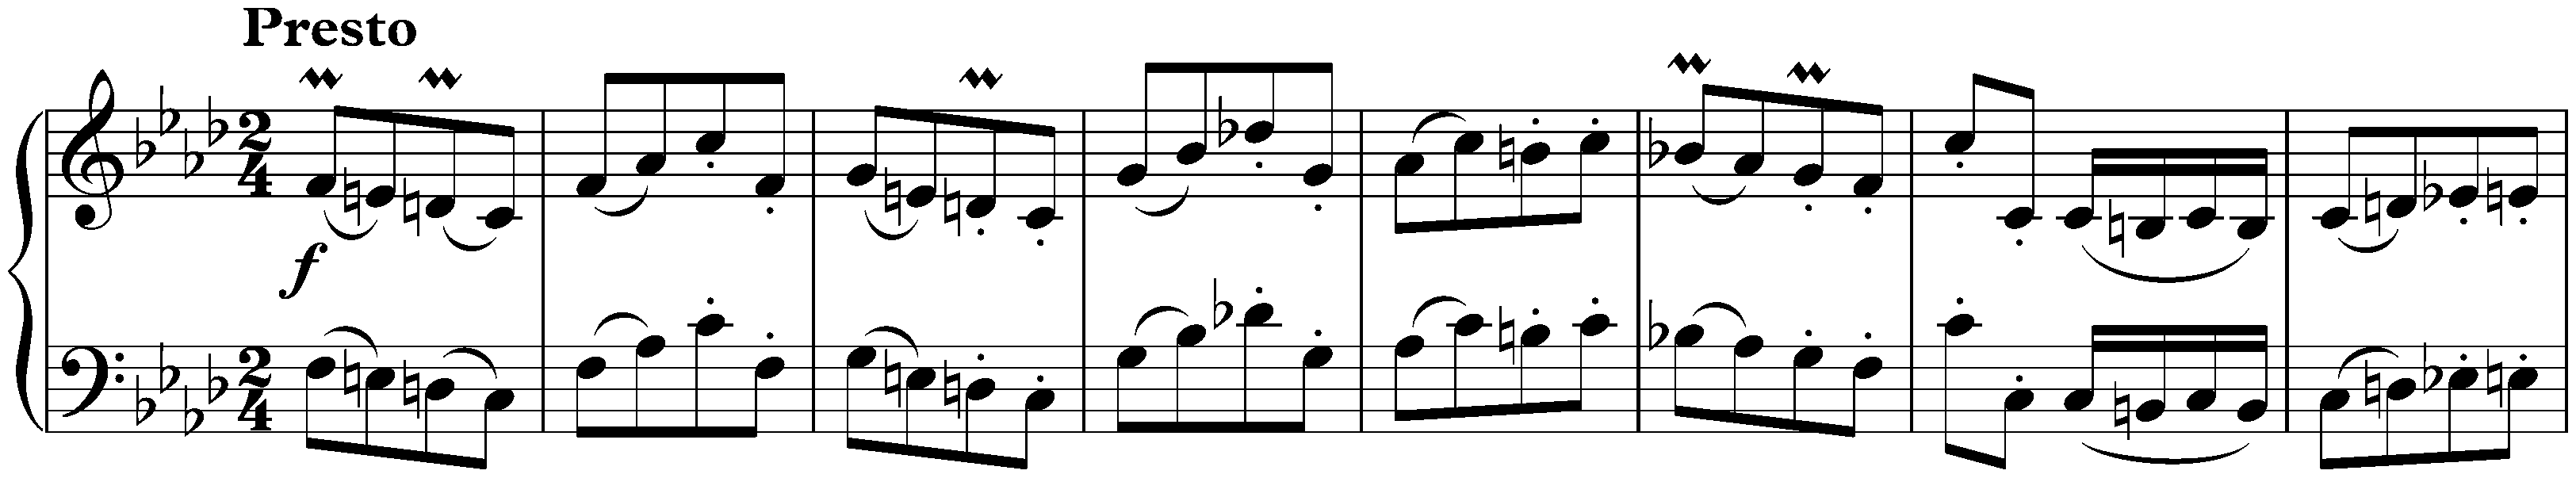 Sonata in F minor, WoO 47 no. 2; 3. Presto